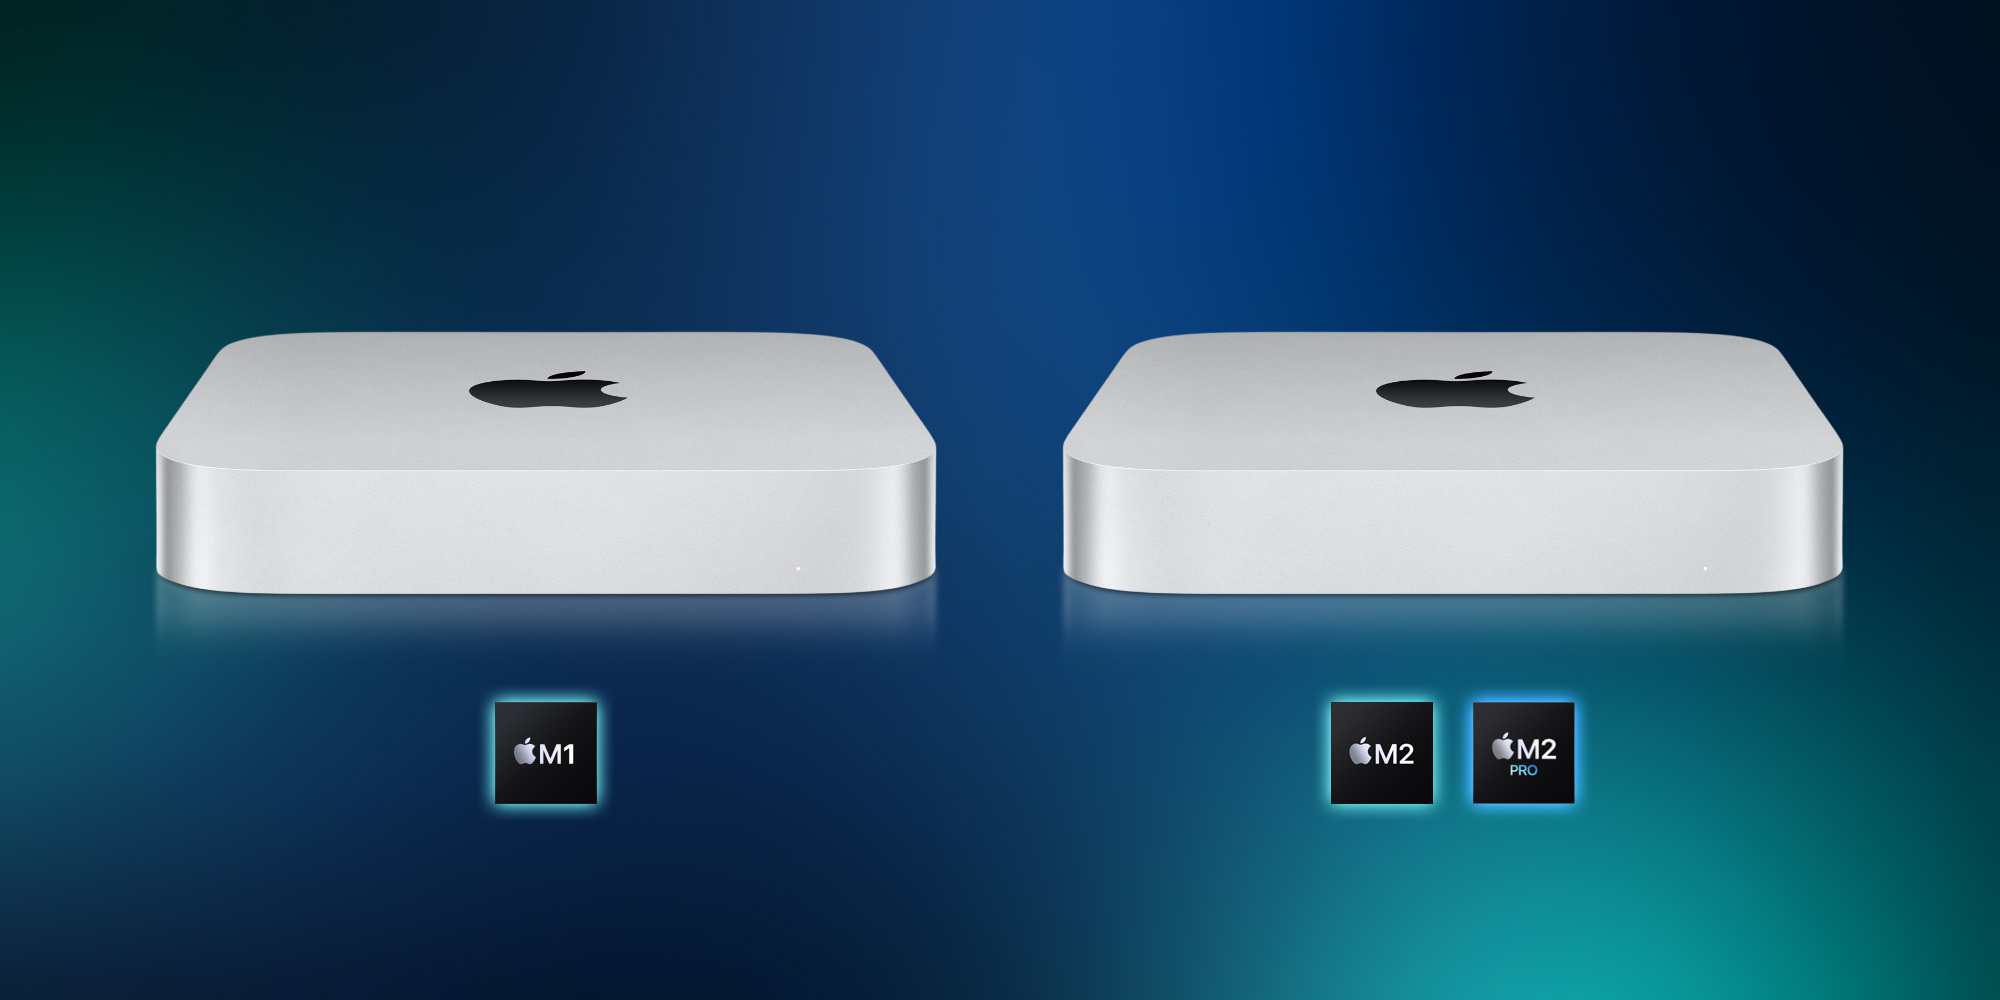 Probamos el Mac Mini con M2 Pro: el Mini se hace mayor